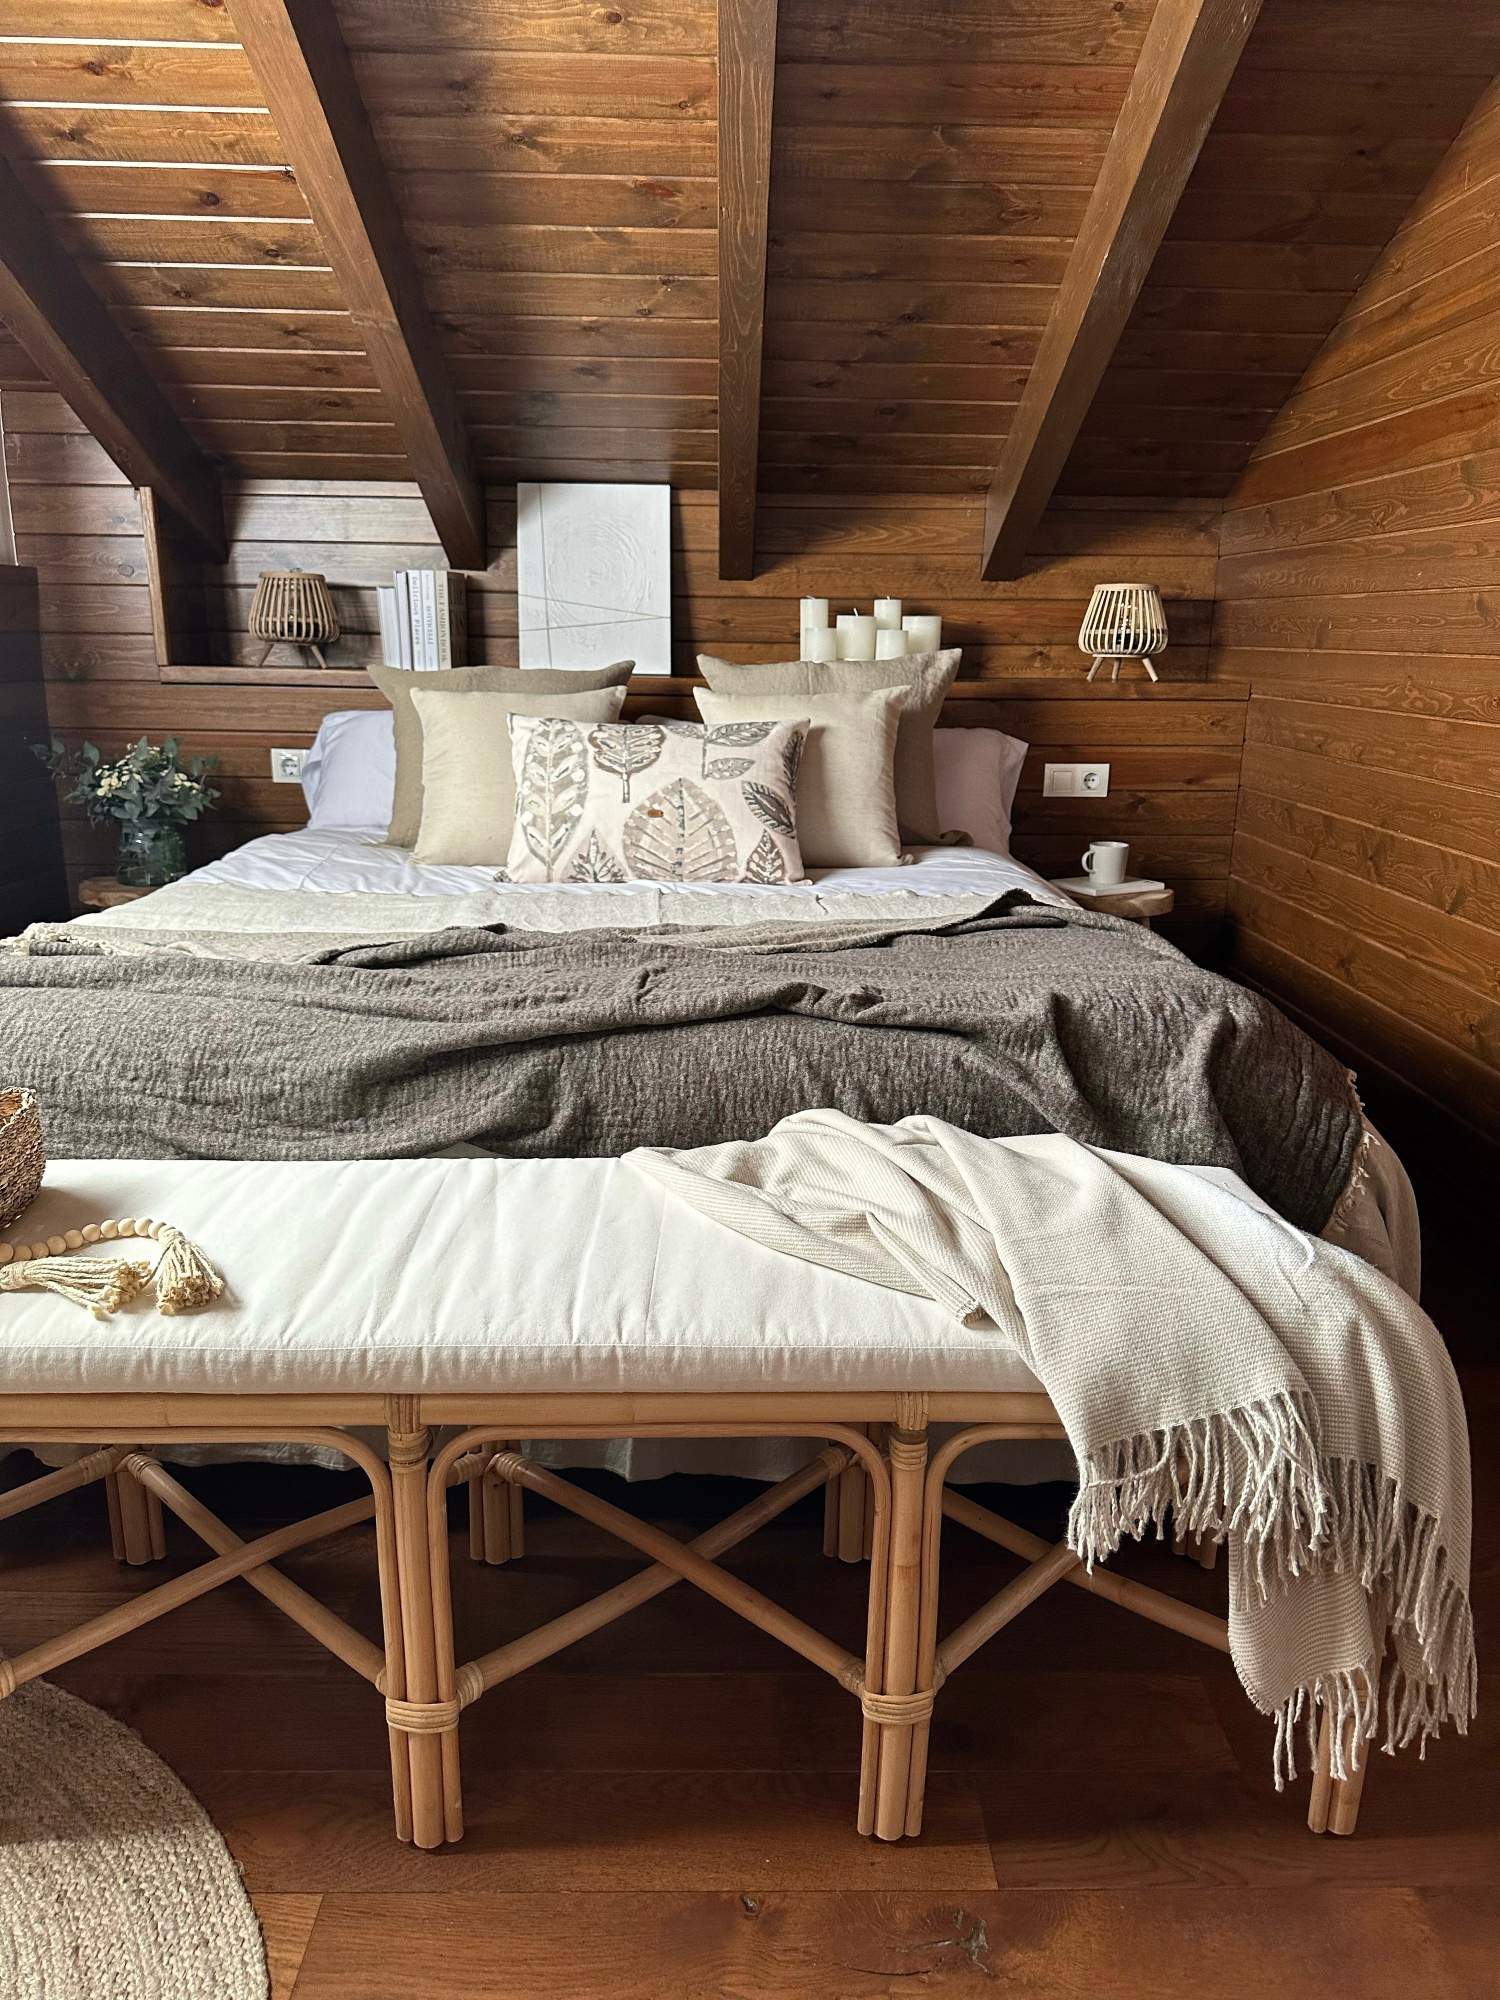 Un dormitorio en tonos suaves de madera.